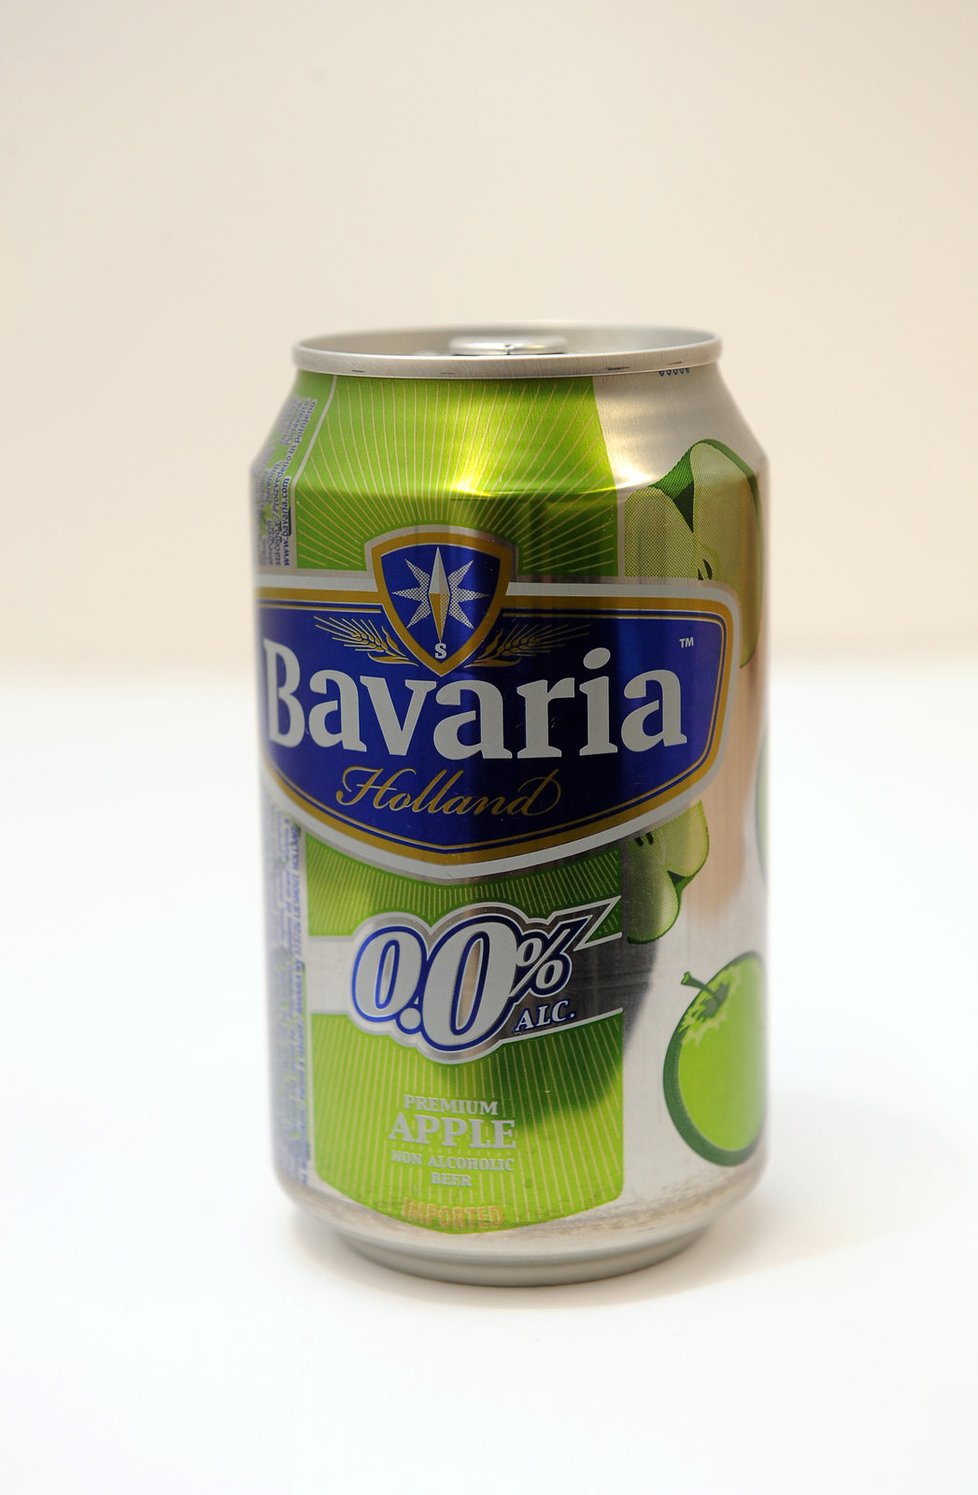 Bavaria Holland, Premium Apple Výrobce: Bavaria Chuť: jako jablečná limonáda, úplně chybí chuť piva Obsah alkoholu: 0 % Obsah piva: neuvedený Ovocná složka: neuvedena Sladidla: cukr Hodnocení odborníka: Líbí se mi údaje o energetické hodnotě na 100 ml, chybí ale informace o obsahu cukru! Známka: 2-